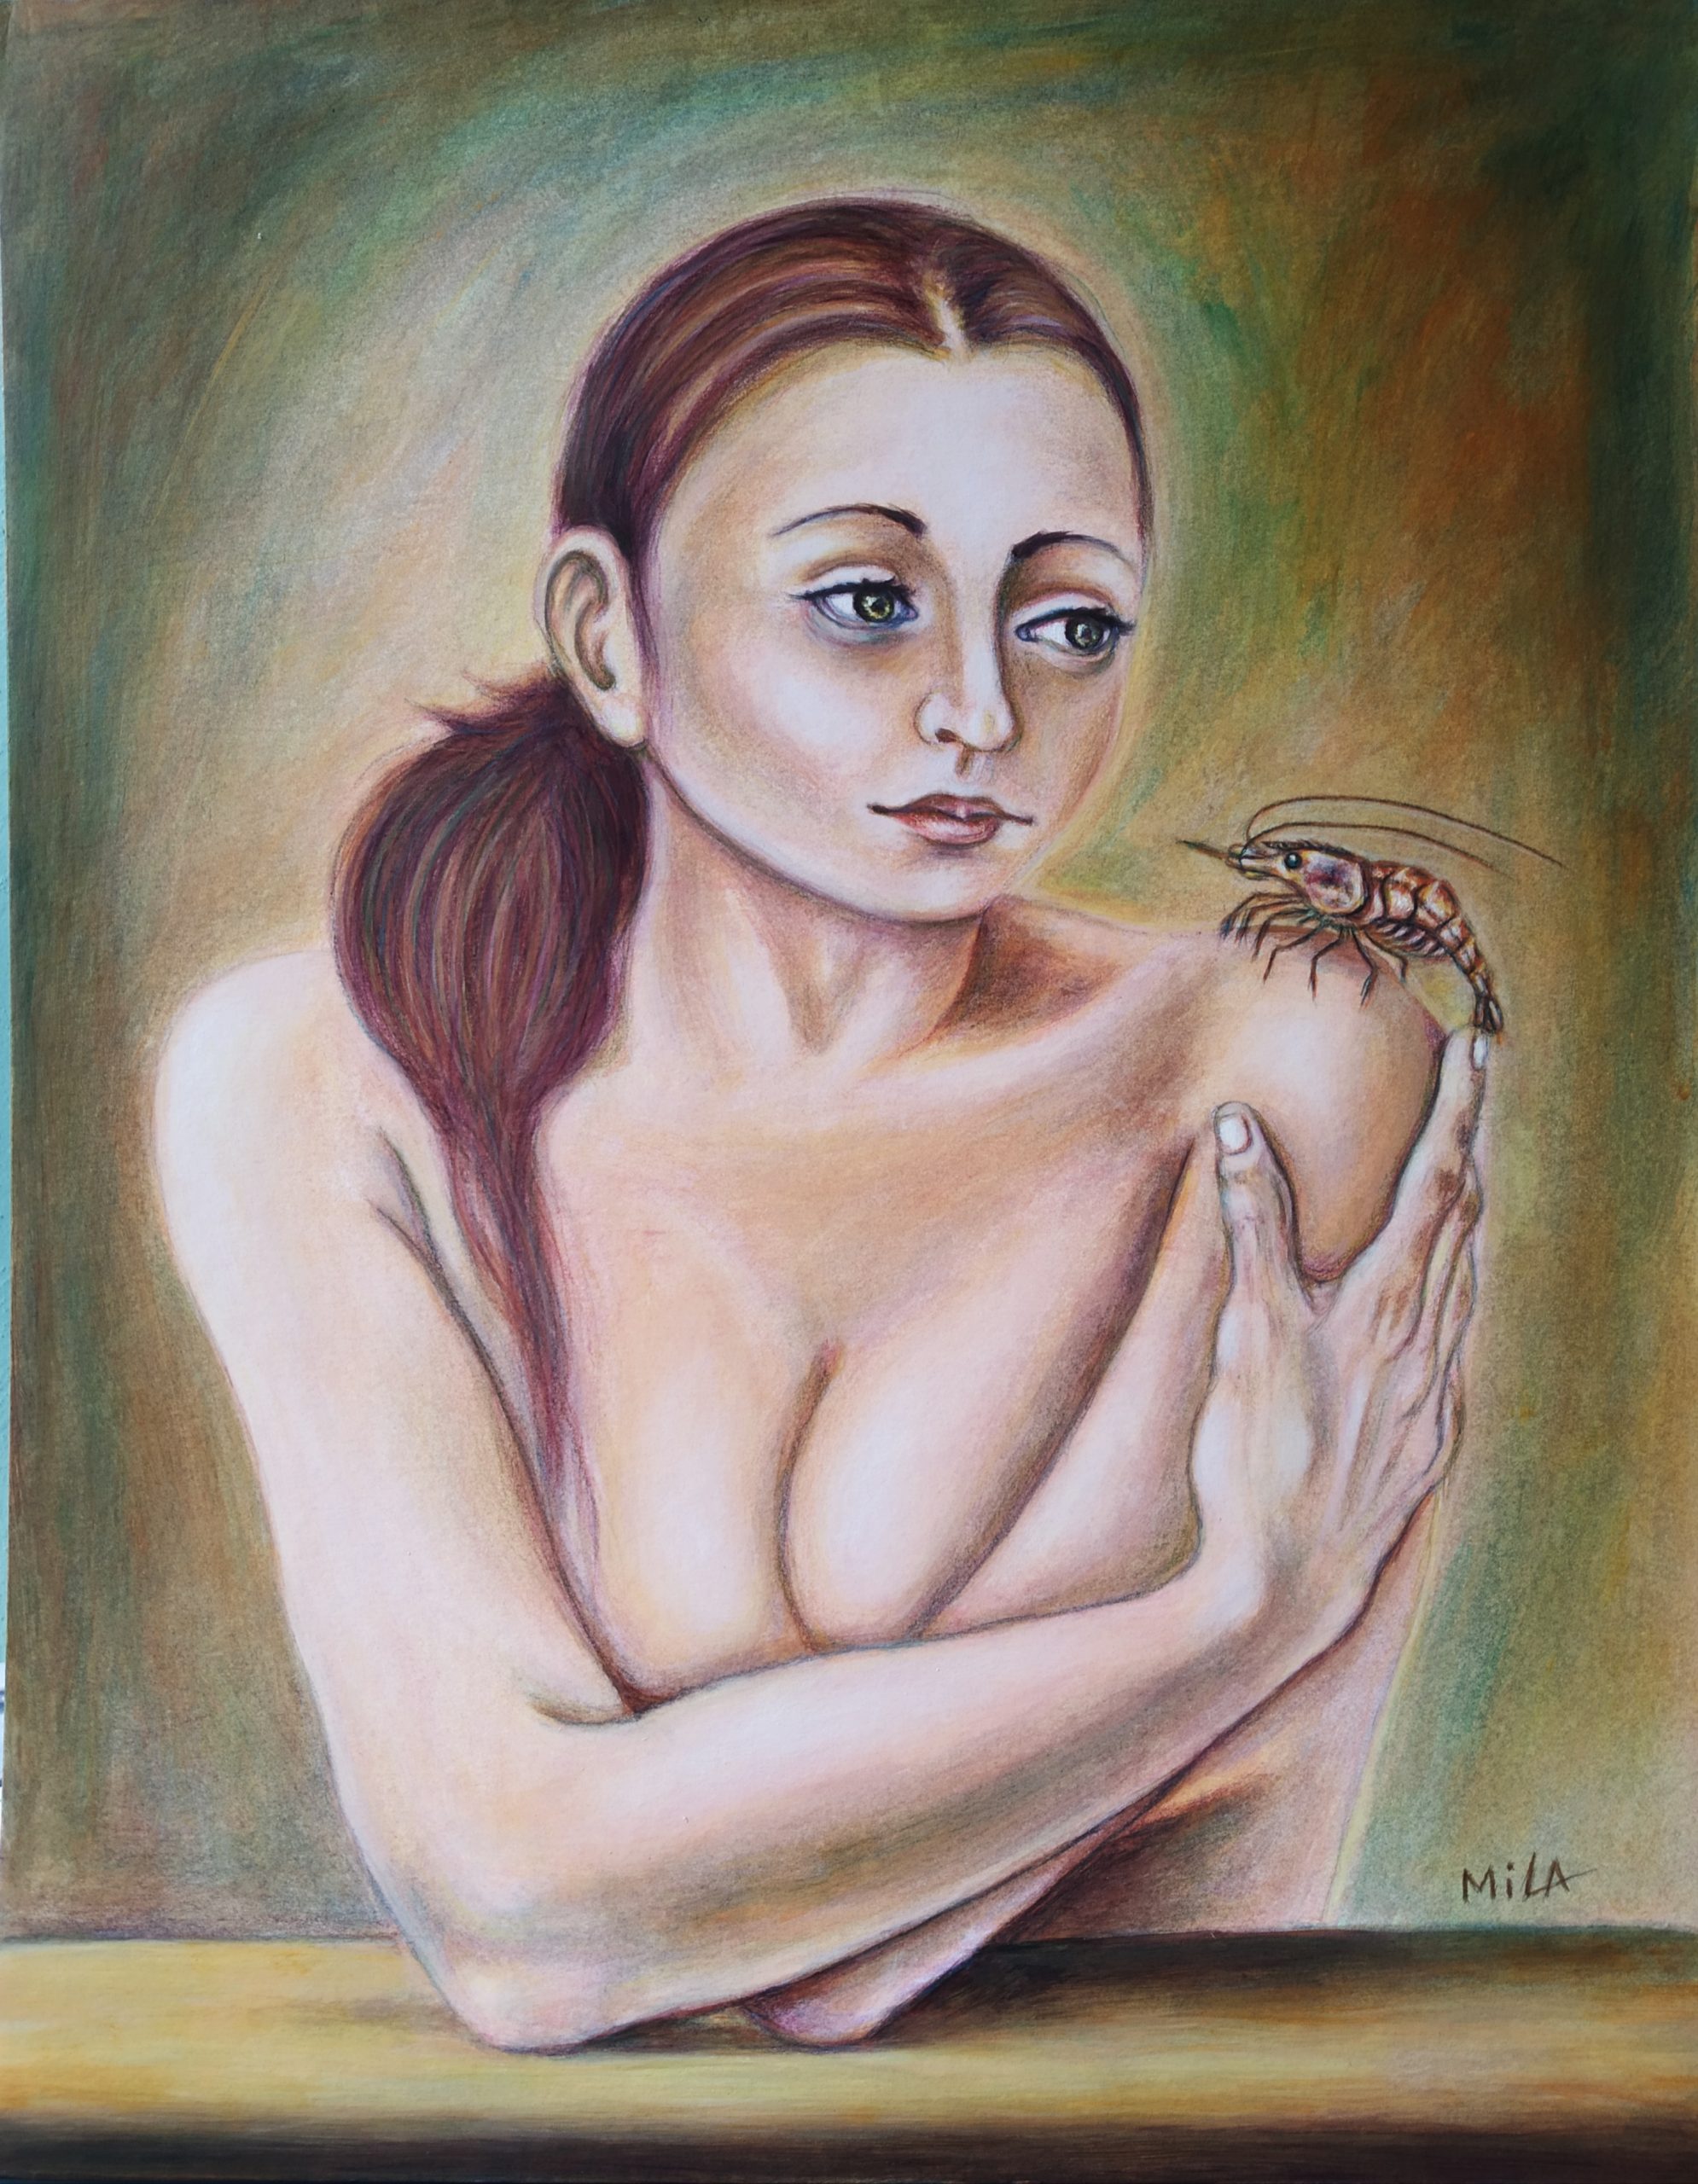 SALA EN MONTAJE, «Pinturas del alma». Milay Gómez Rodríguez (Mila)